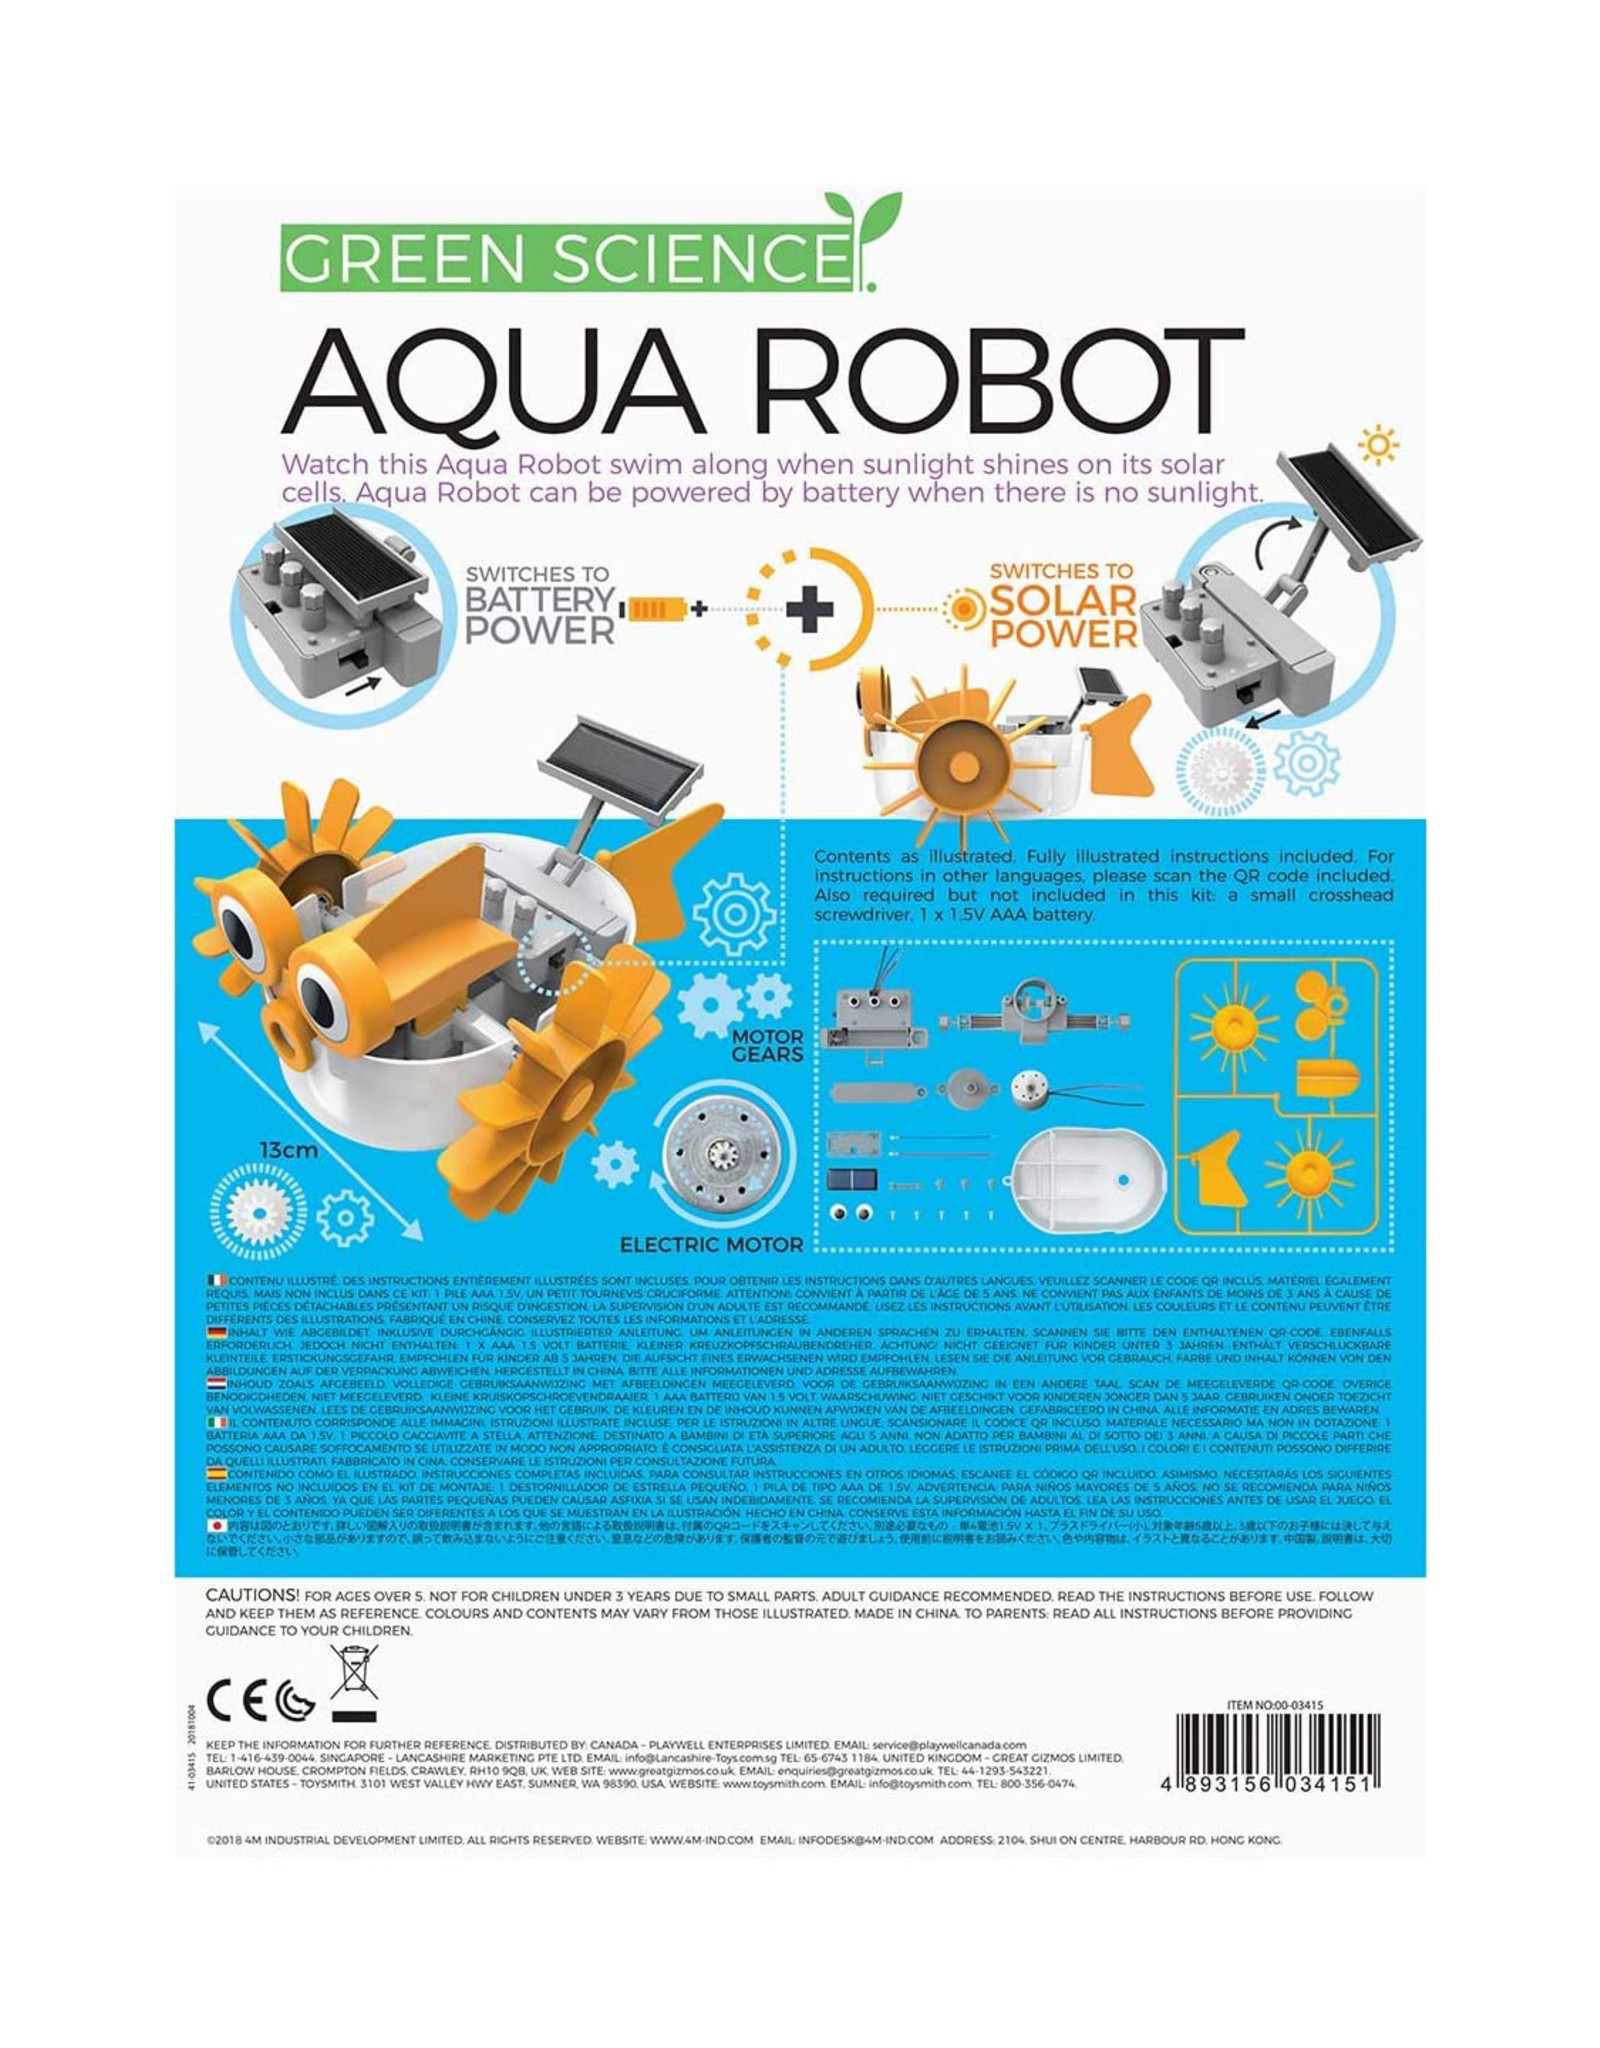 Aqua Robot